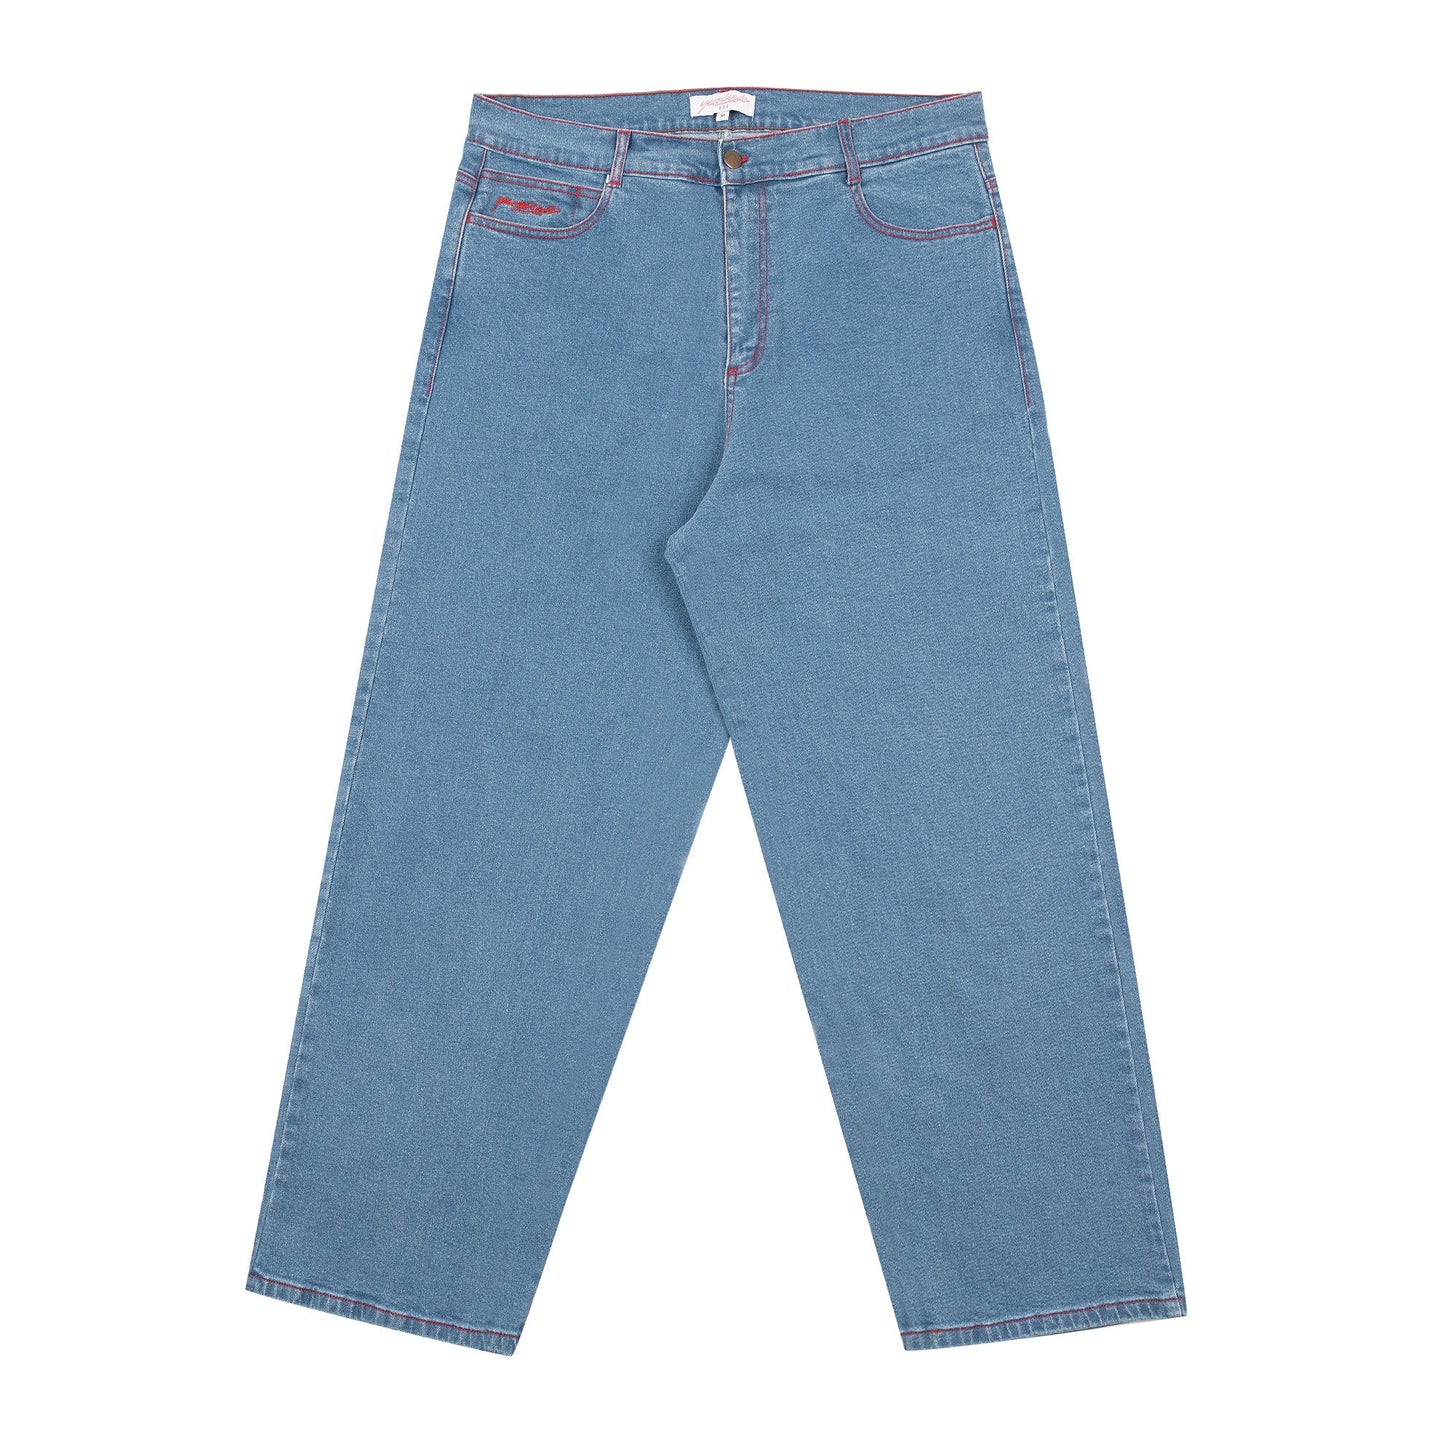 Yardsale Goblin Jeans (Light Denim)